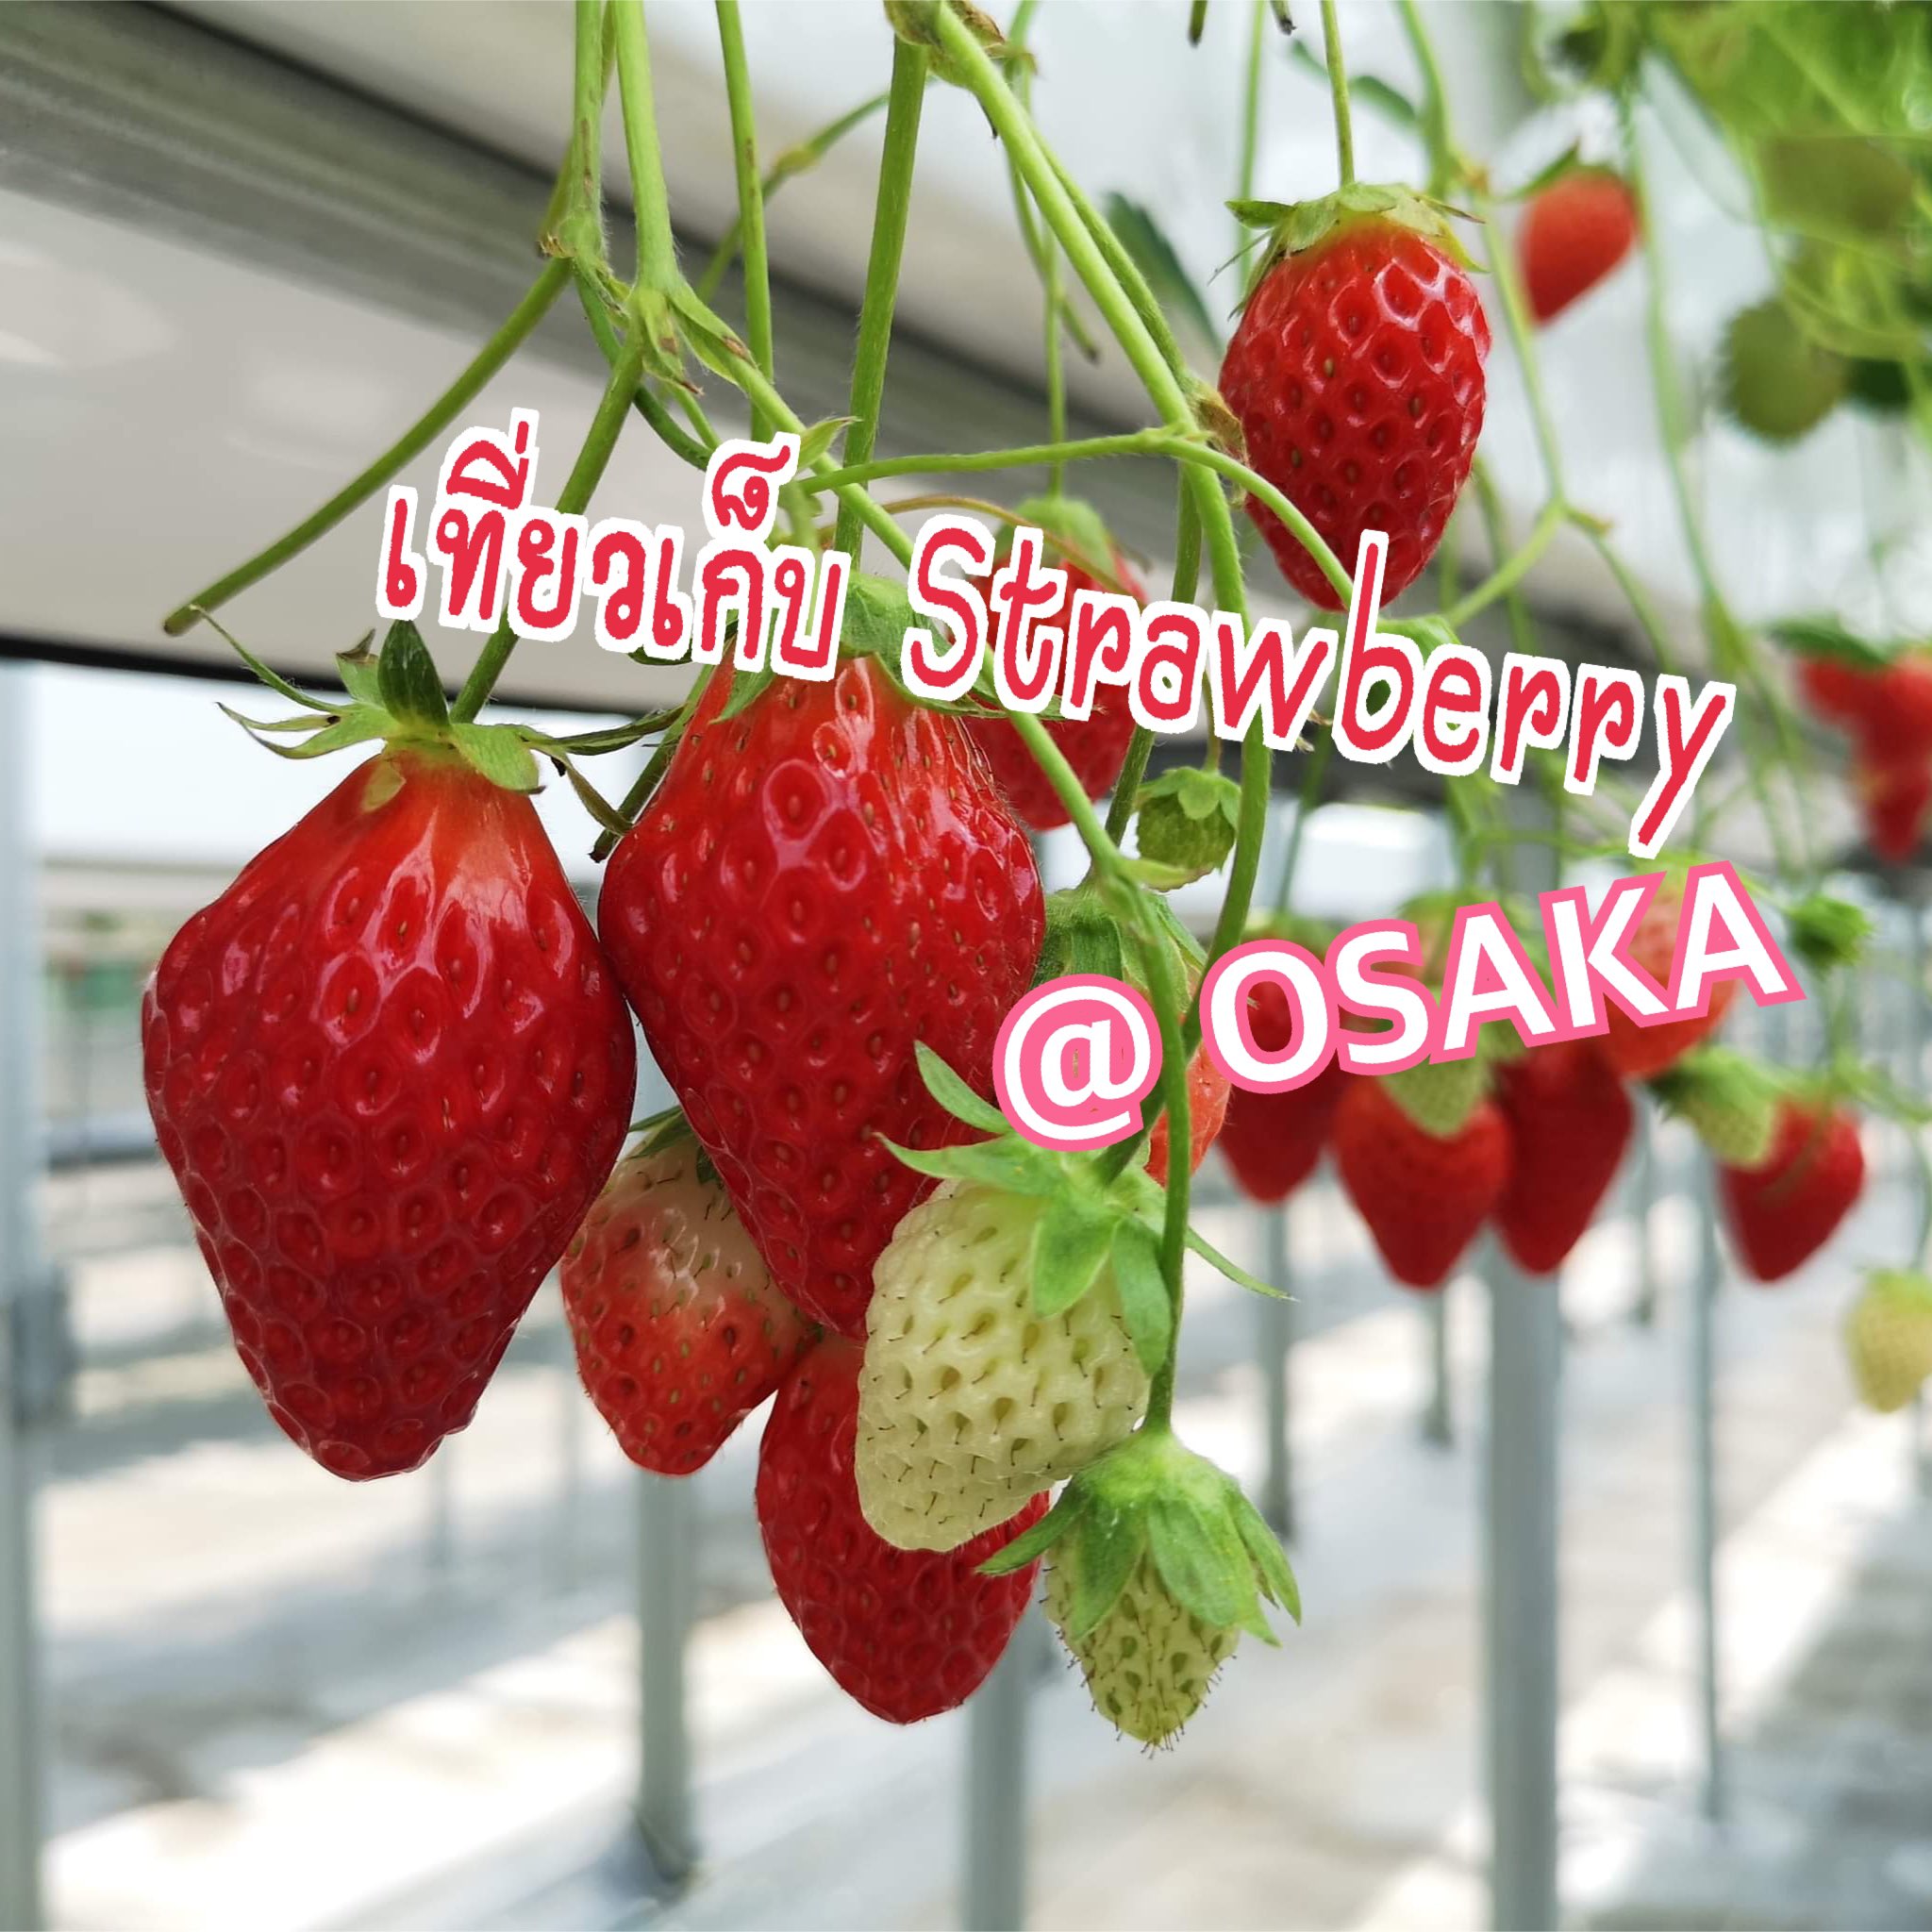 大阪大莓农场